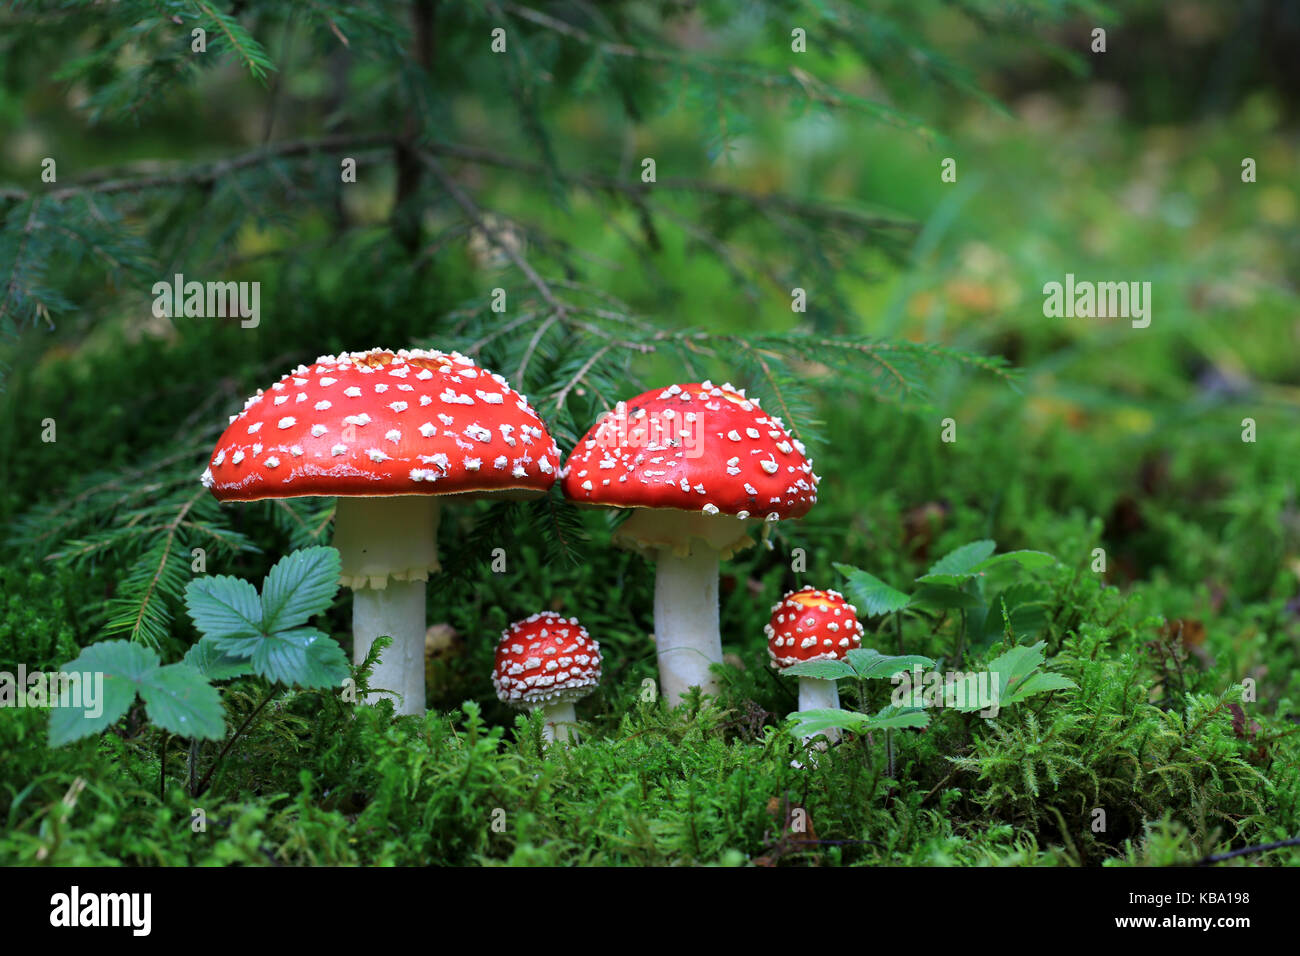 Velenoso amanita muscaria funghi nella foresta Foto Stock